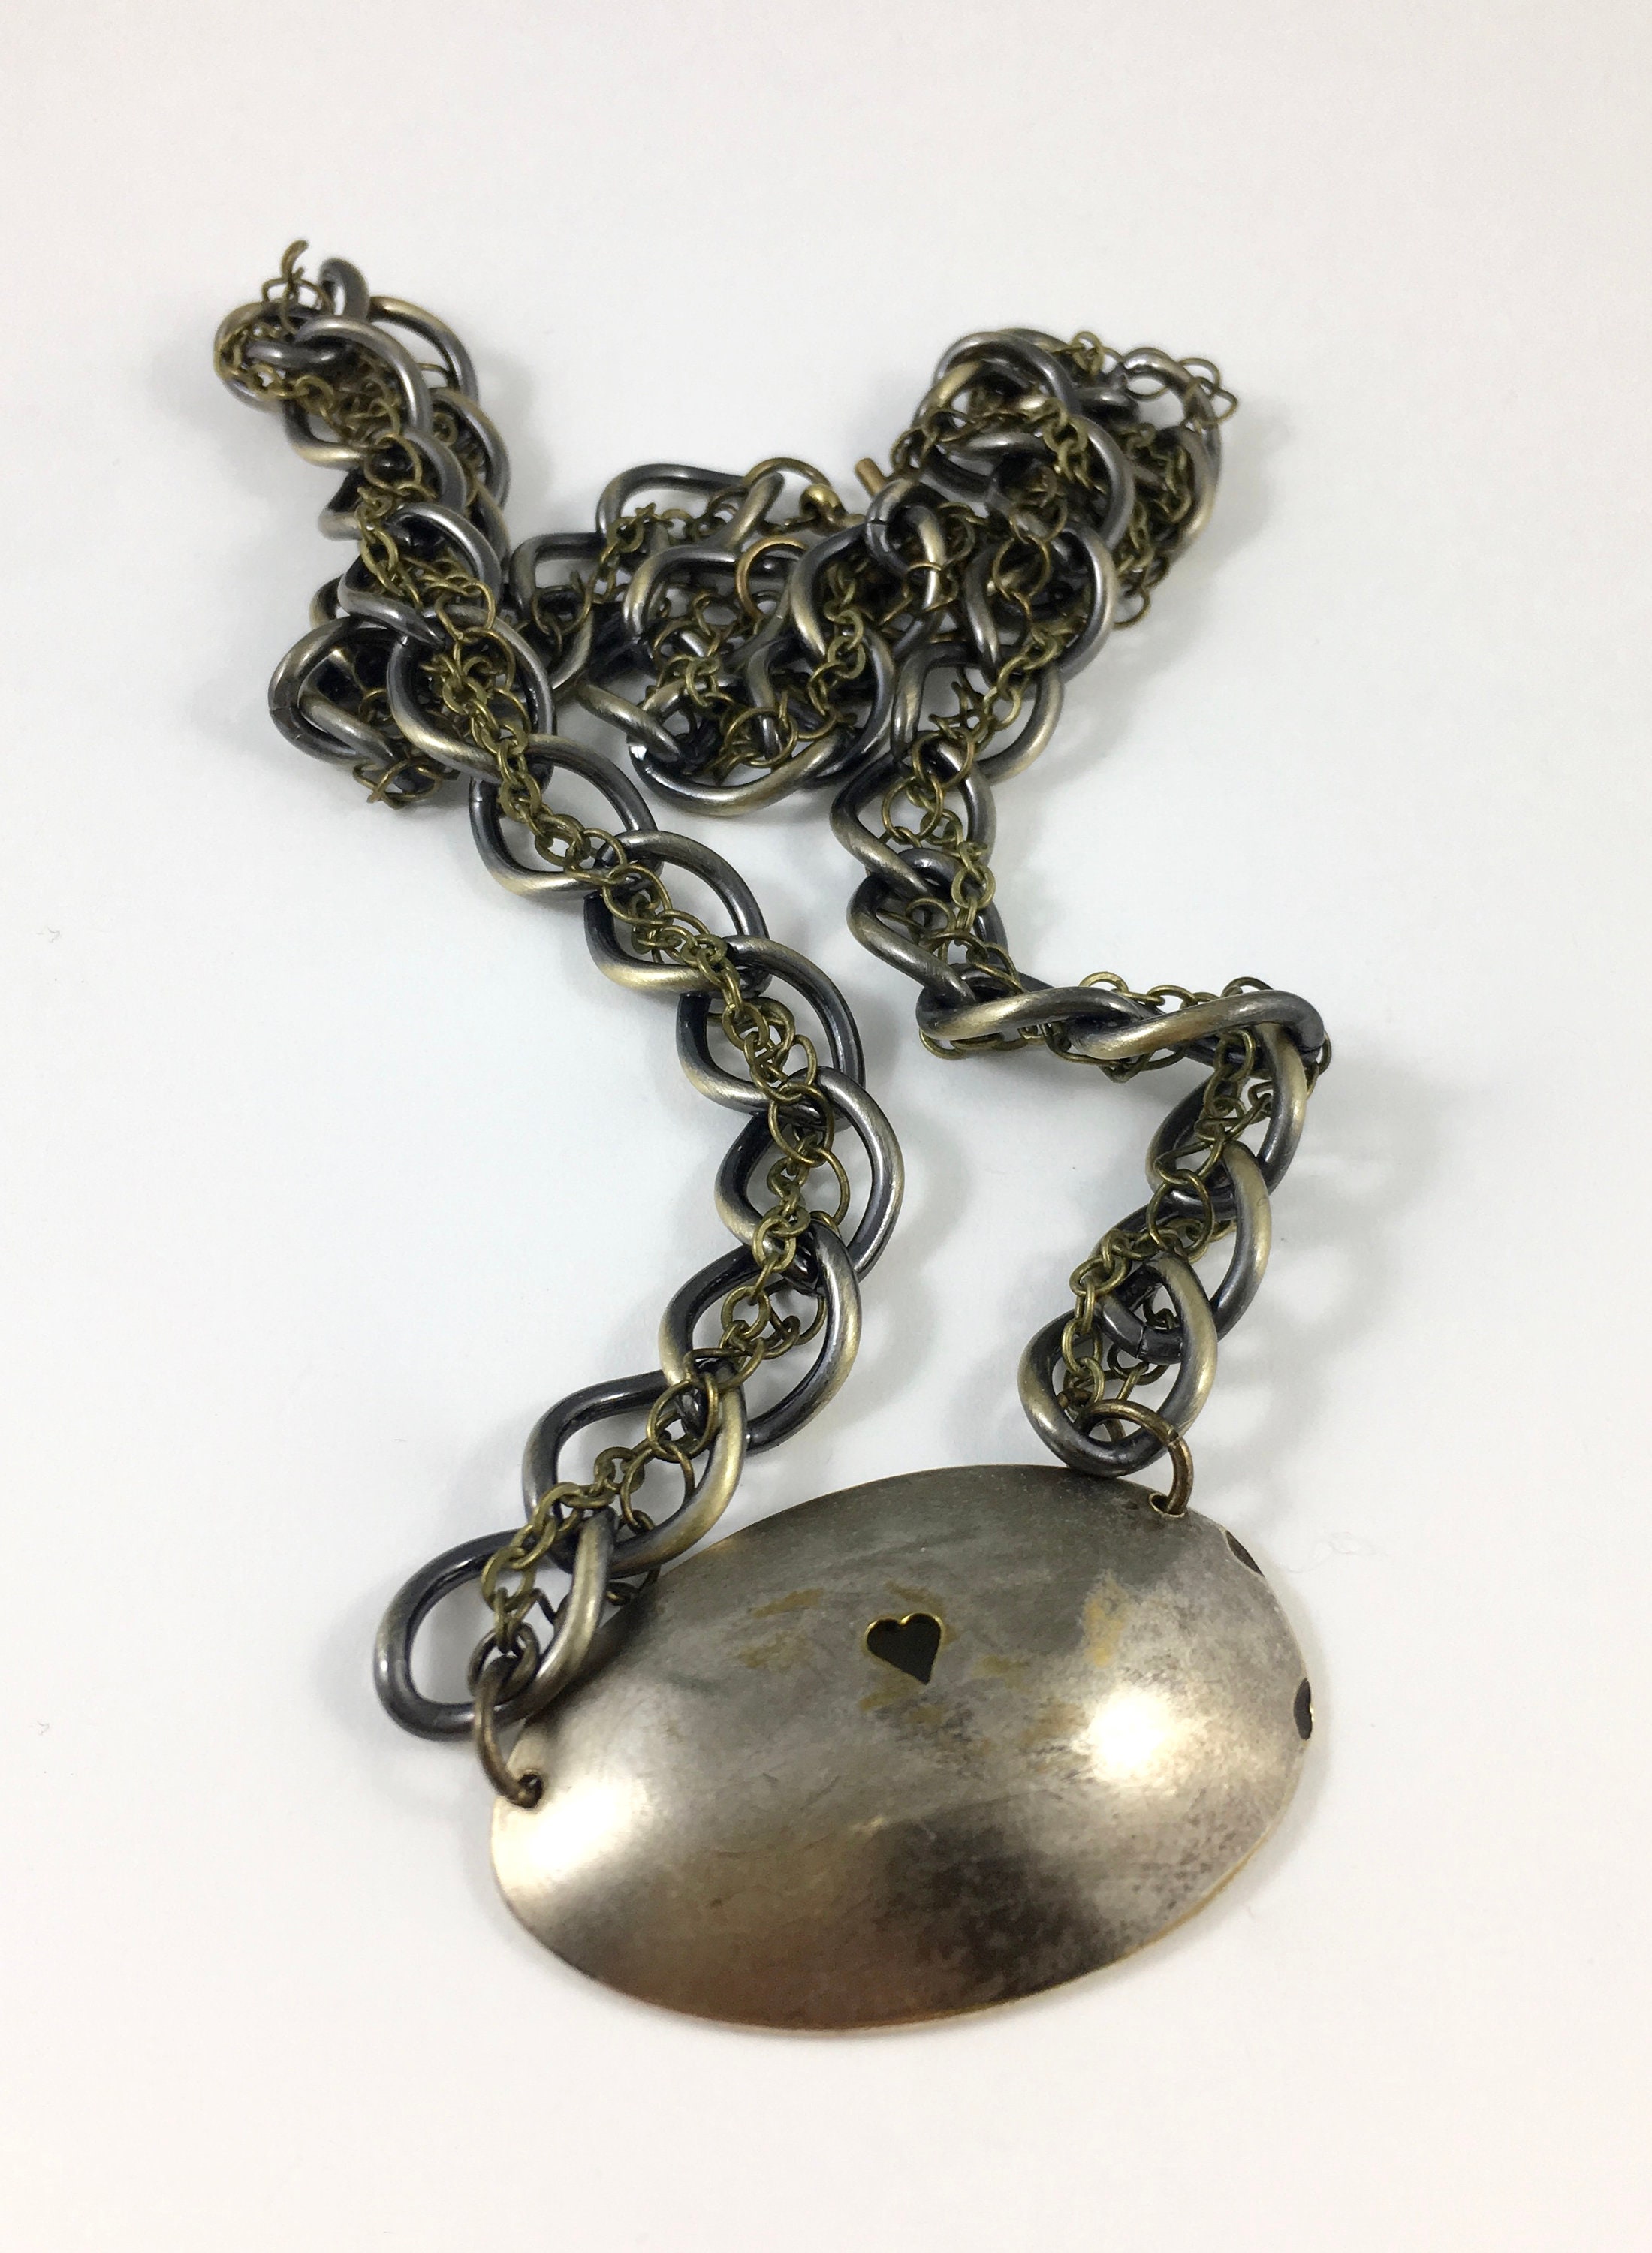 Virginia Heart Necklace Virginia Jewelry Spoon Necklace | Etsy